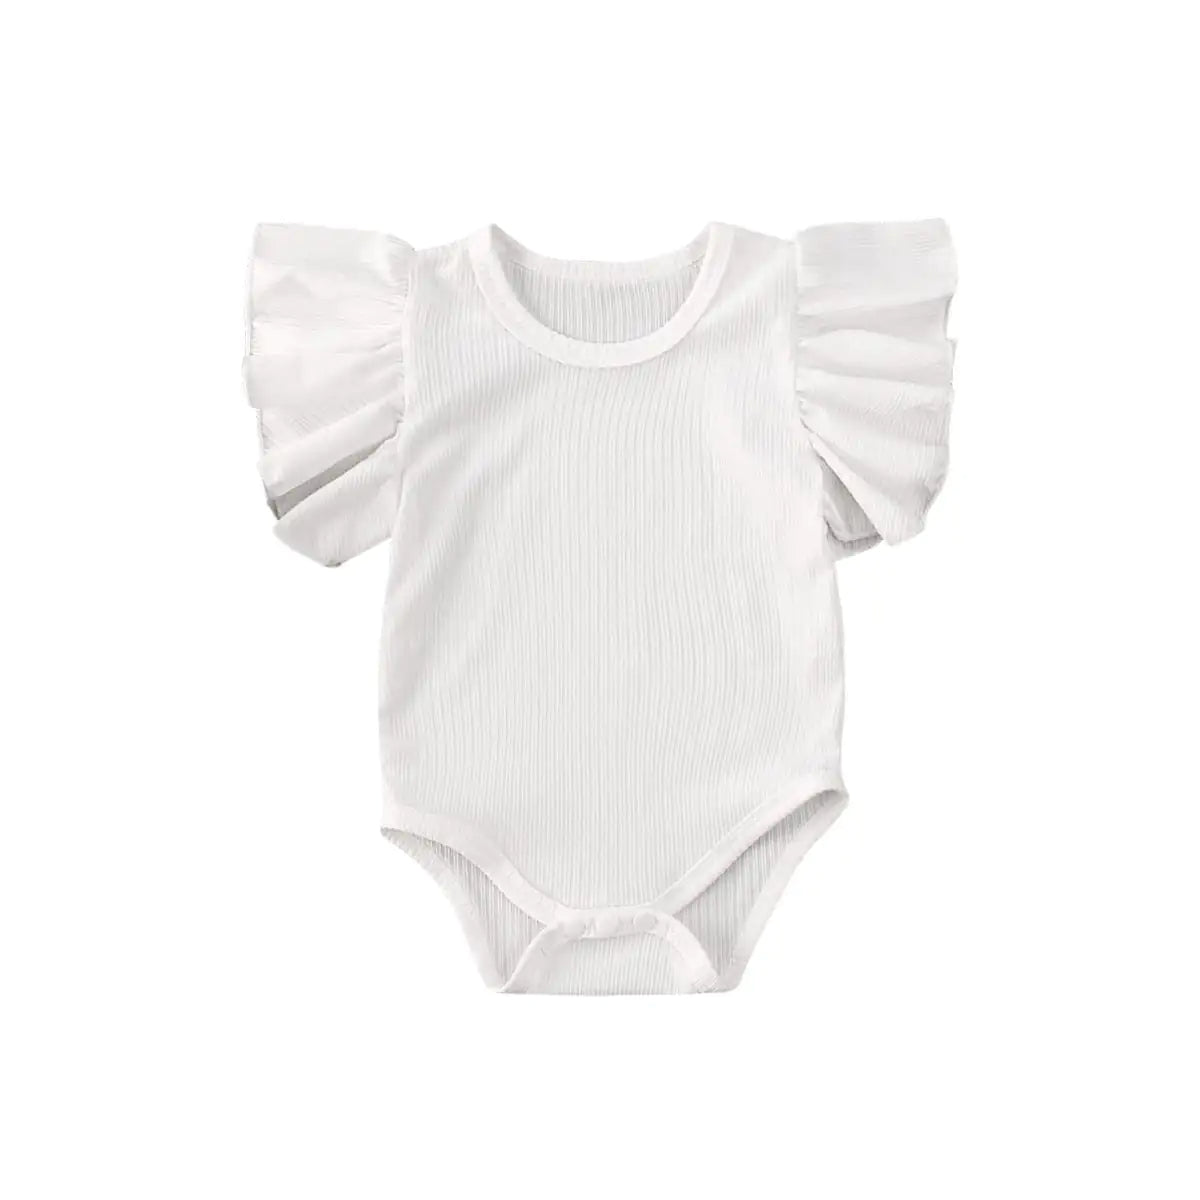 Newborn Body Suit Todder White 12 18Months